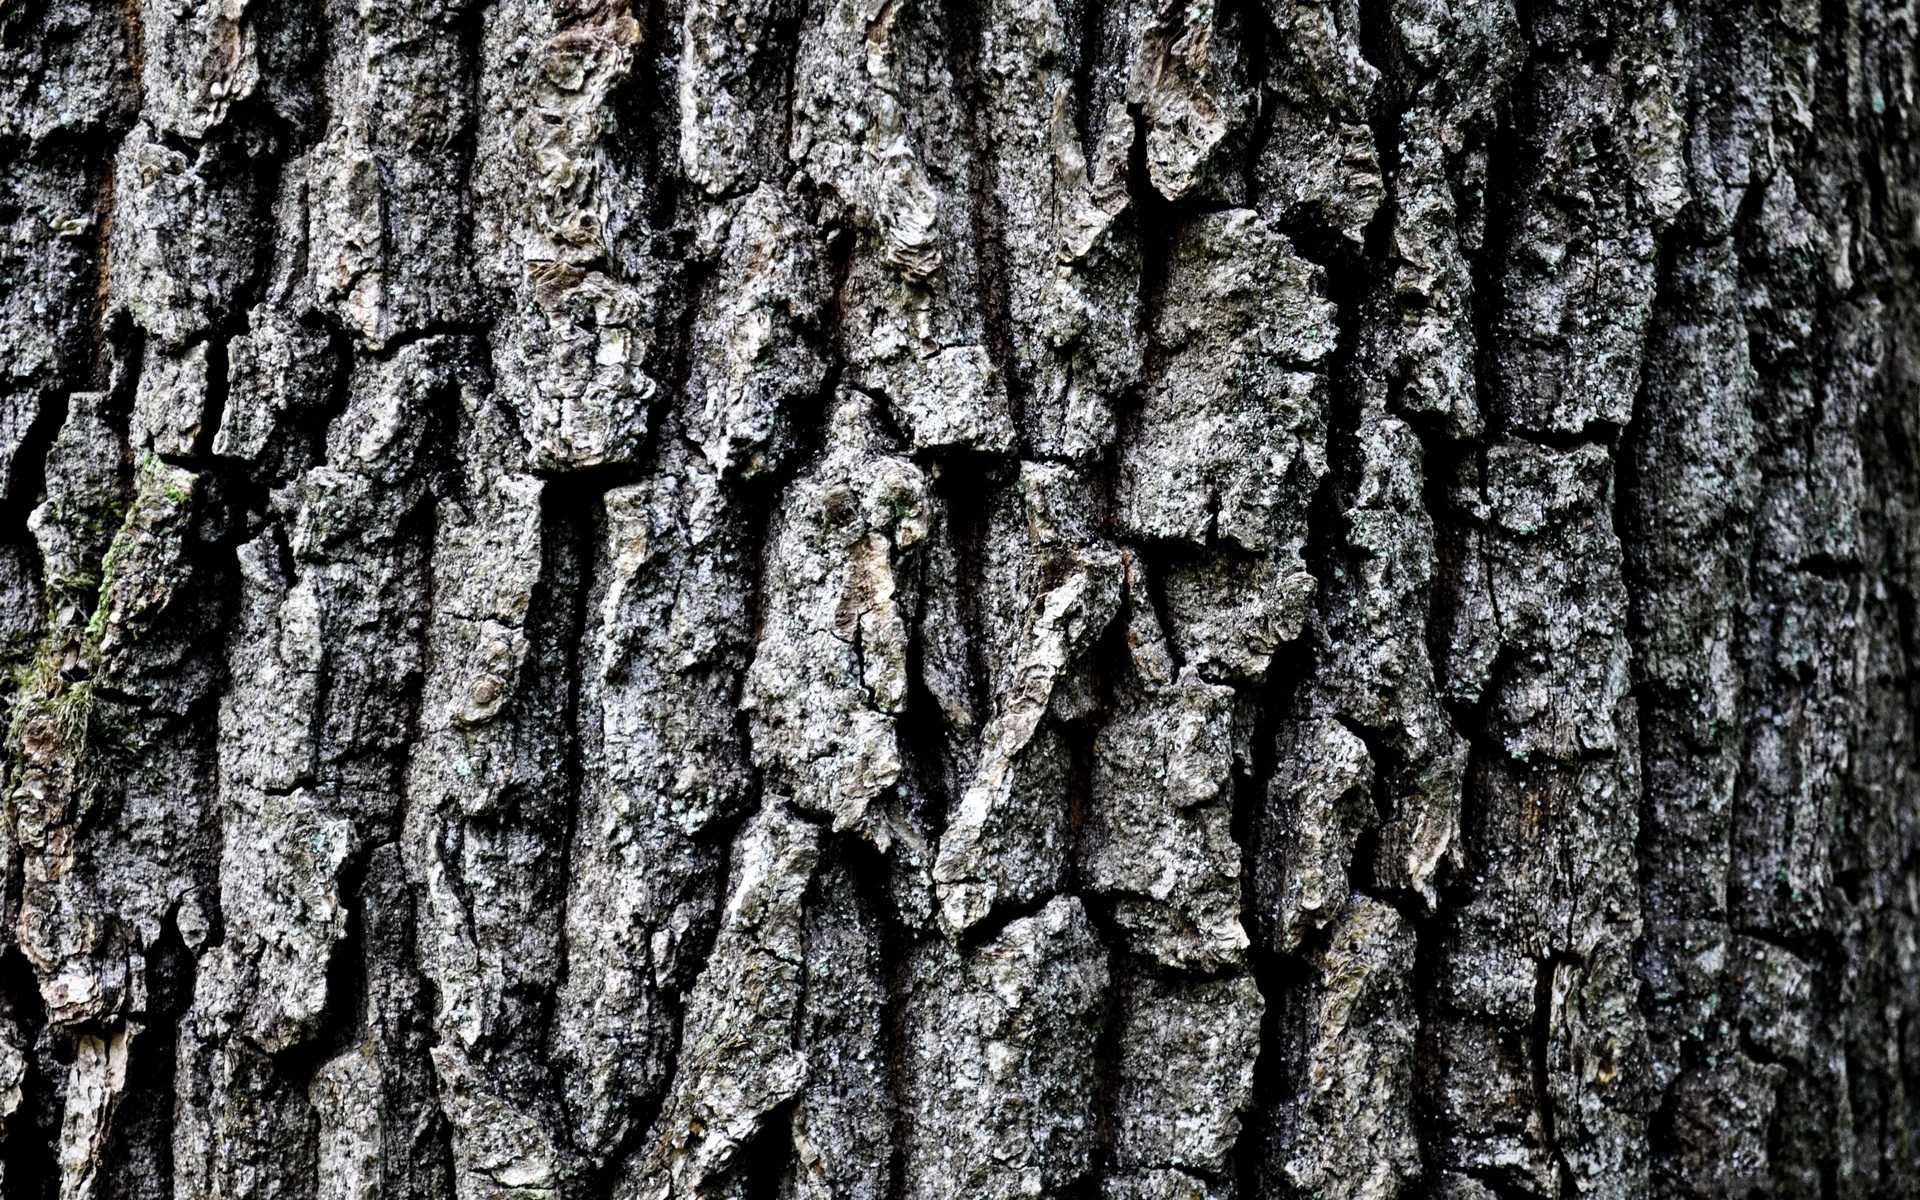  42 Tree Bark Wallpapers WallpaperSafari